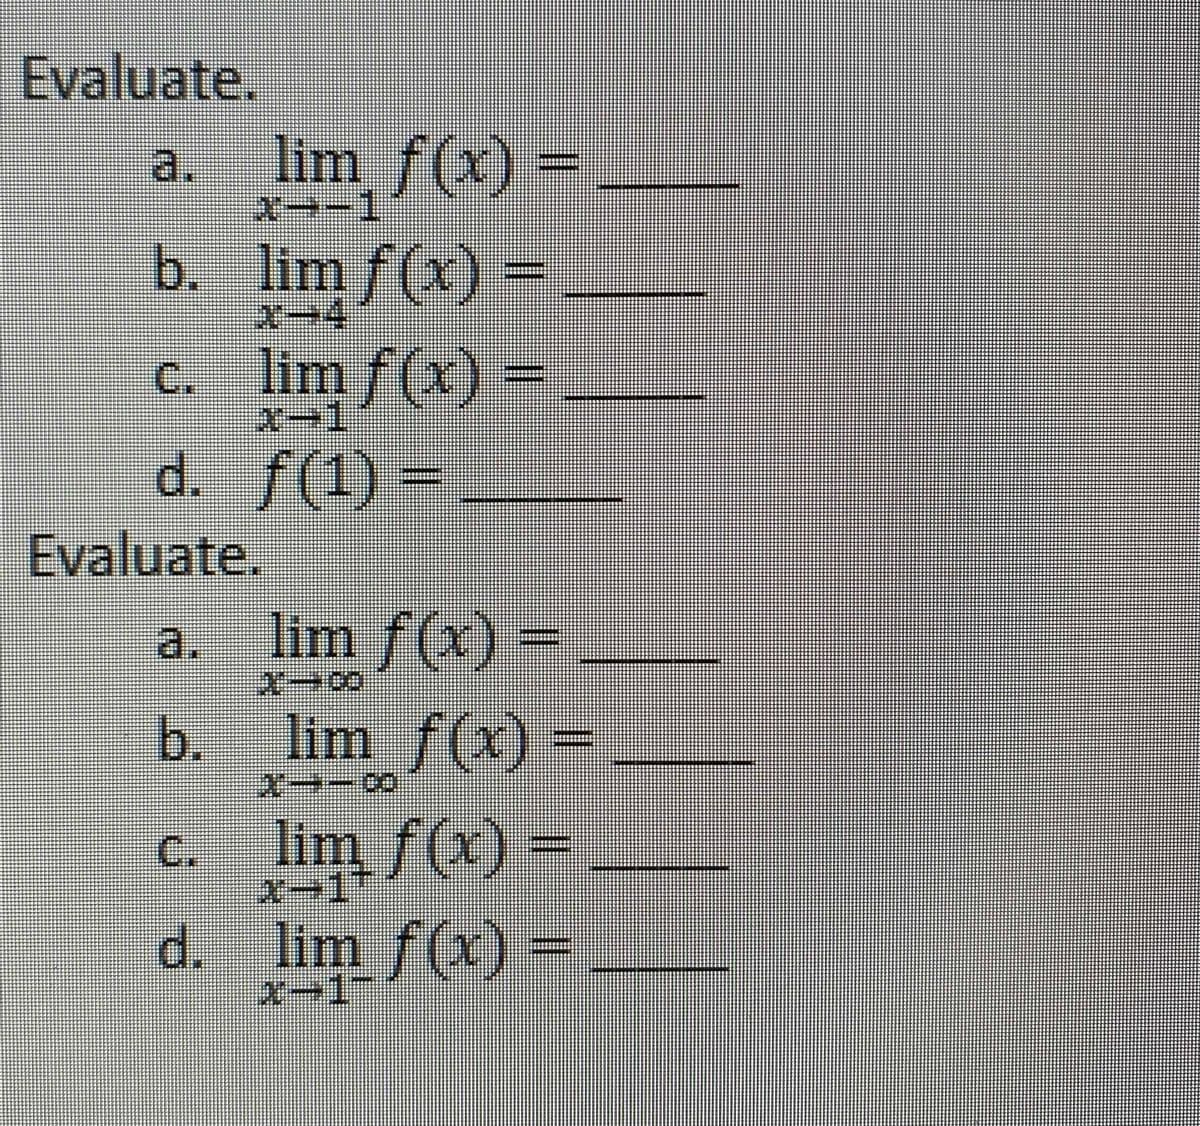 Evaluate.
lim f(x)
= _
a.
よーー1
b. lim f(x) =
Xー4
c. lim f(x) =
2ー1
d. f(1) =
Evaluate.
a. lim
f(x)=
xー8
b. lim f(x)
=
c. lim f(x) =
d. lim f(x) =
